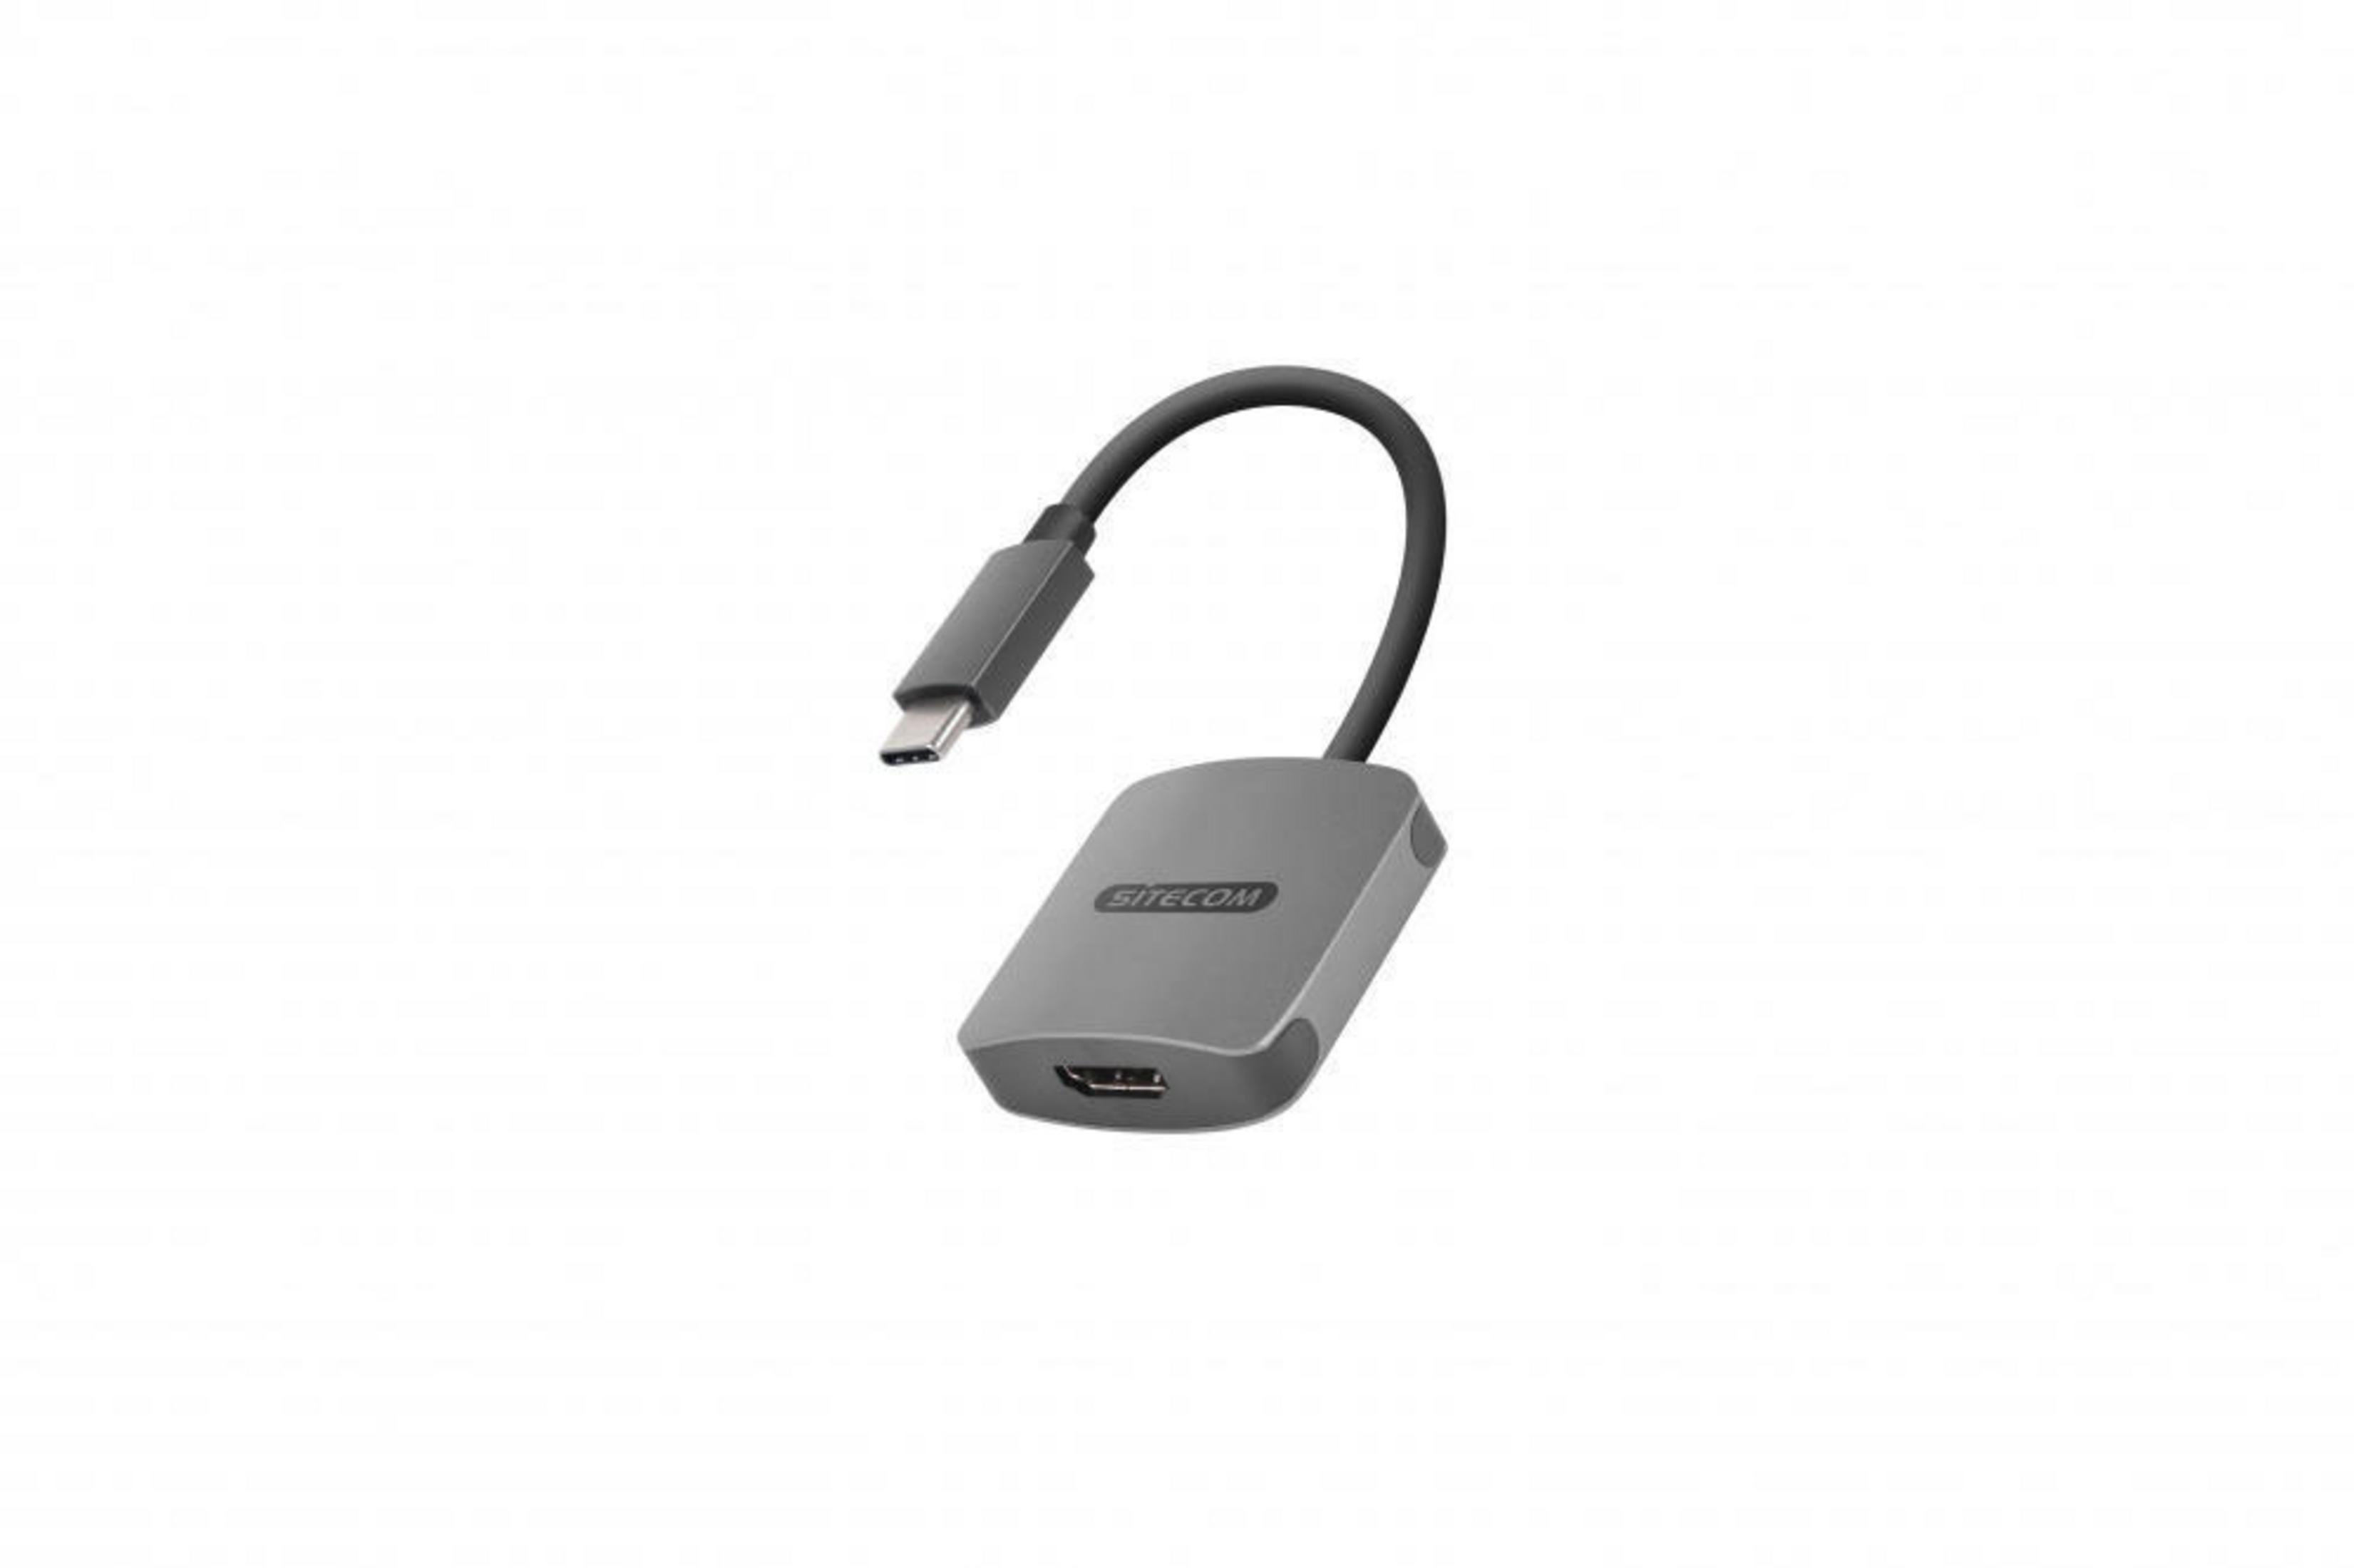 SITECOM TO 3.1 HDMI Silber Adapter, CN-372 USB USB-C ADAPT.